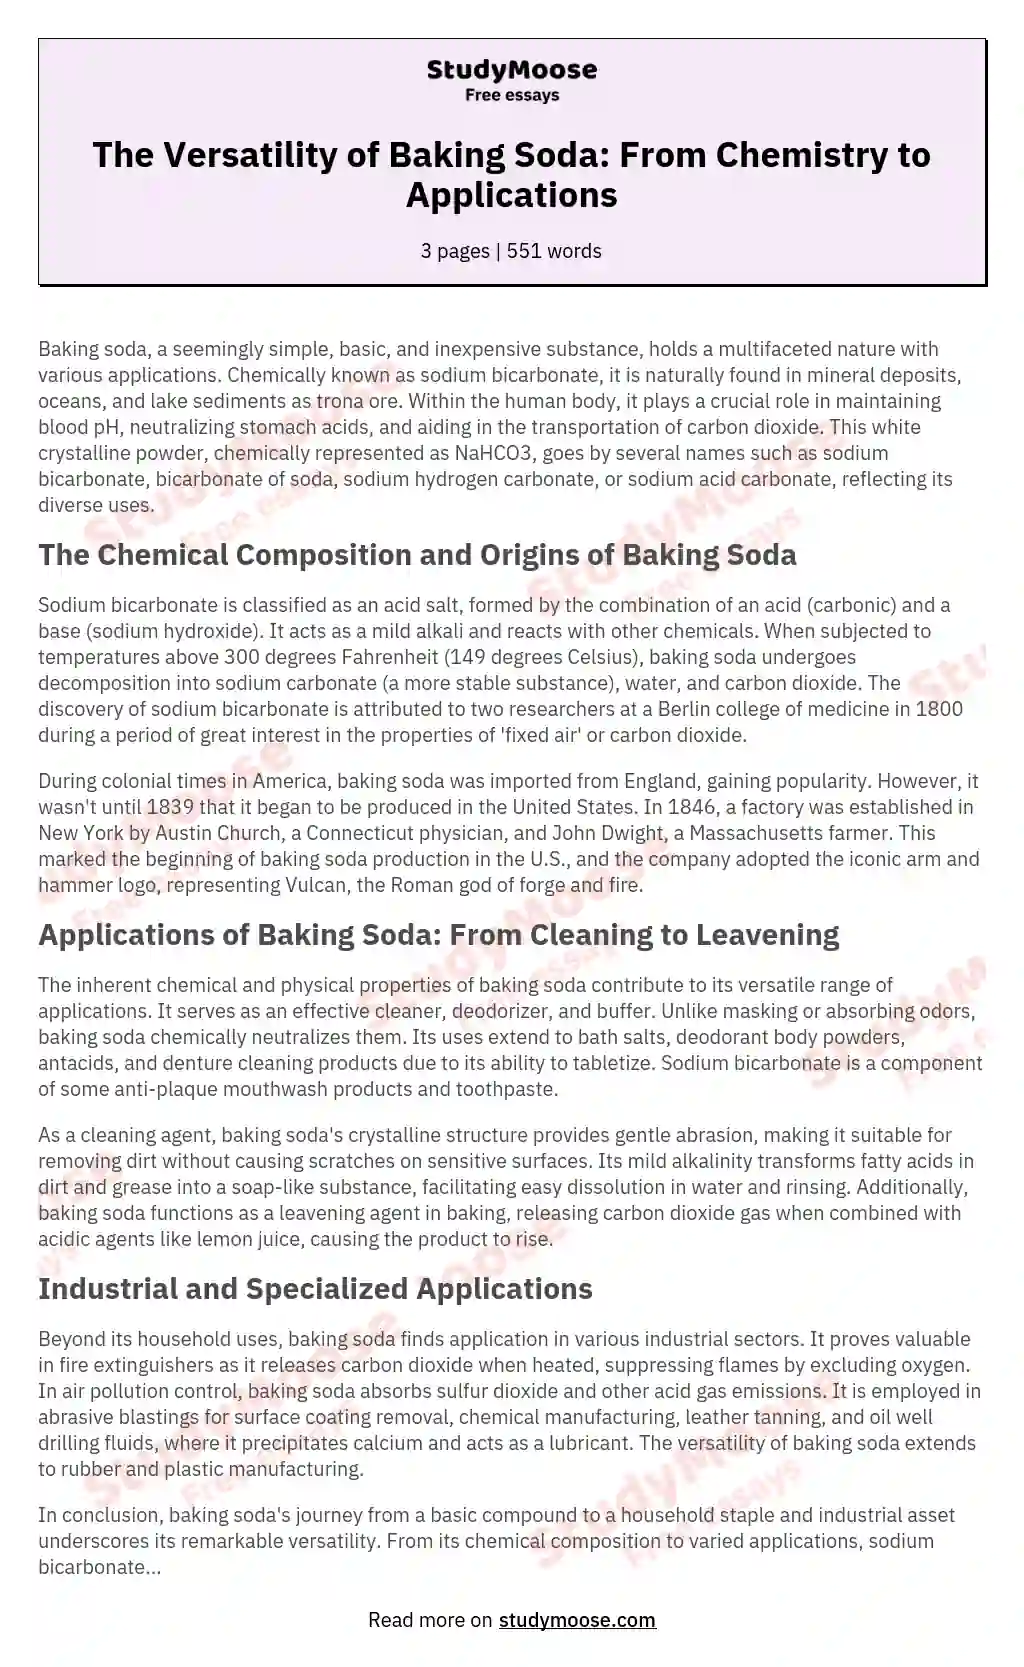 History of Baking Soda